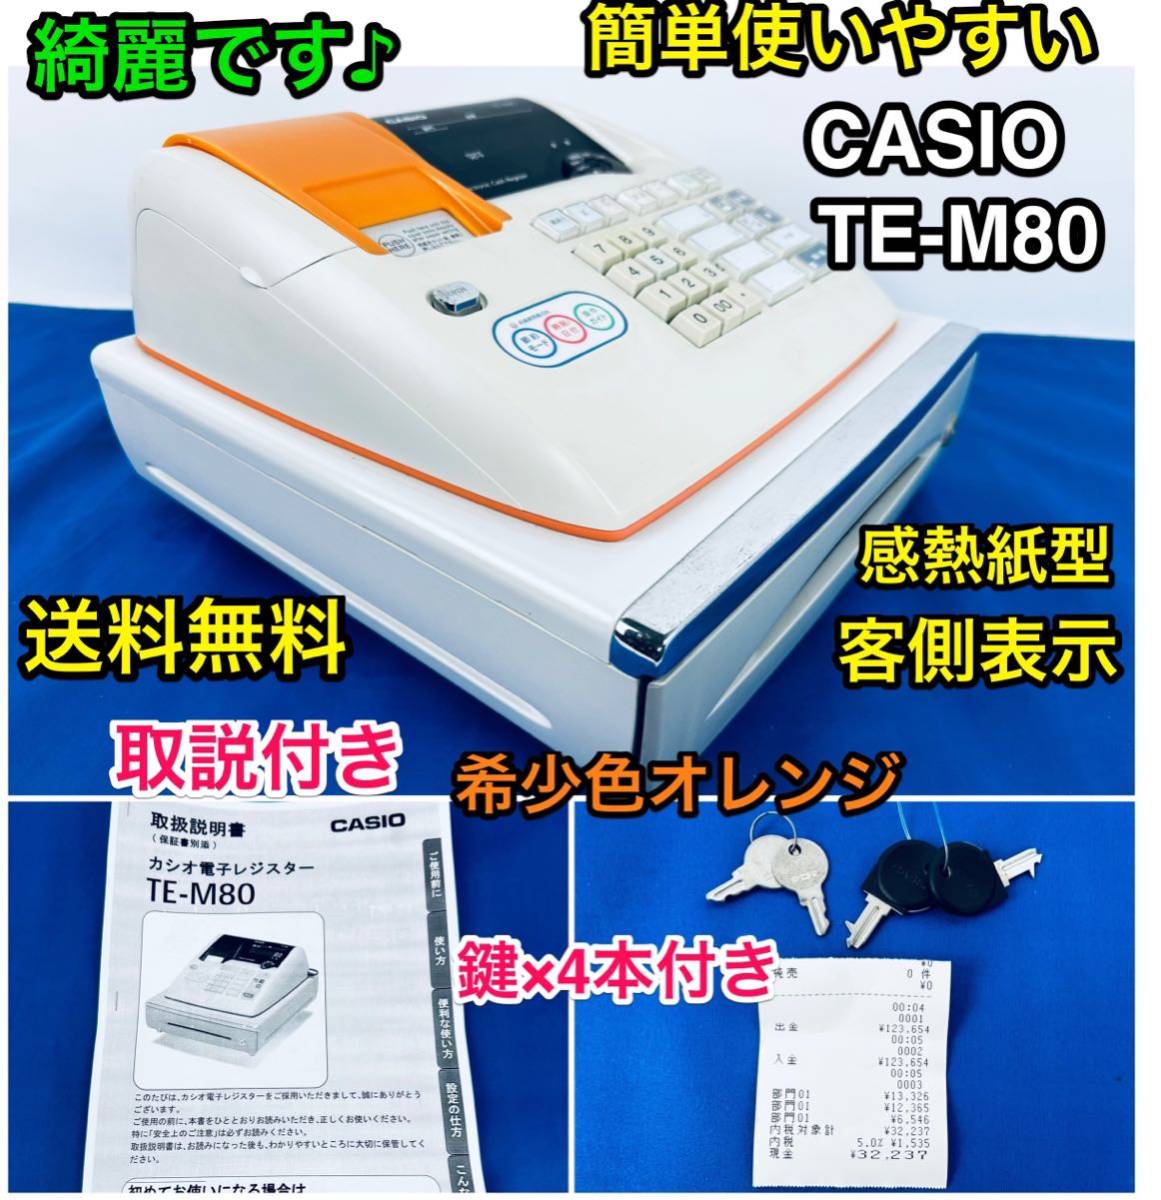 中古 CASIO レジ カシオ TE-M80 レジスタ